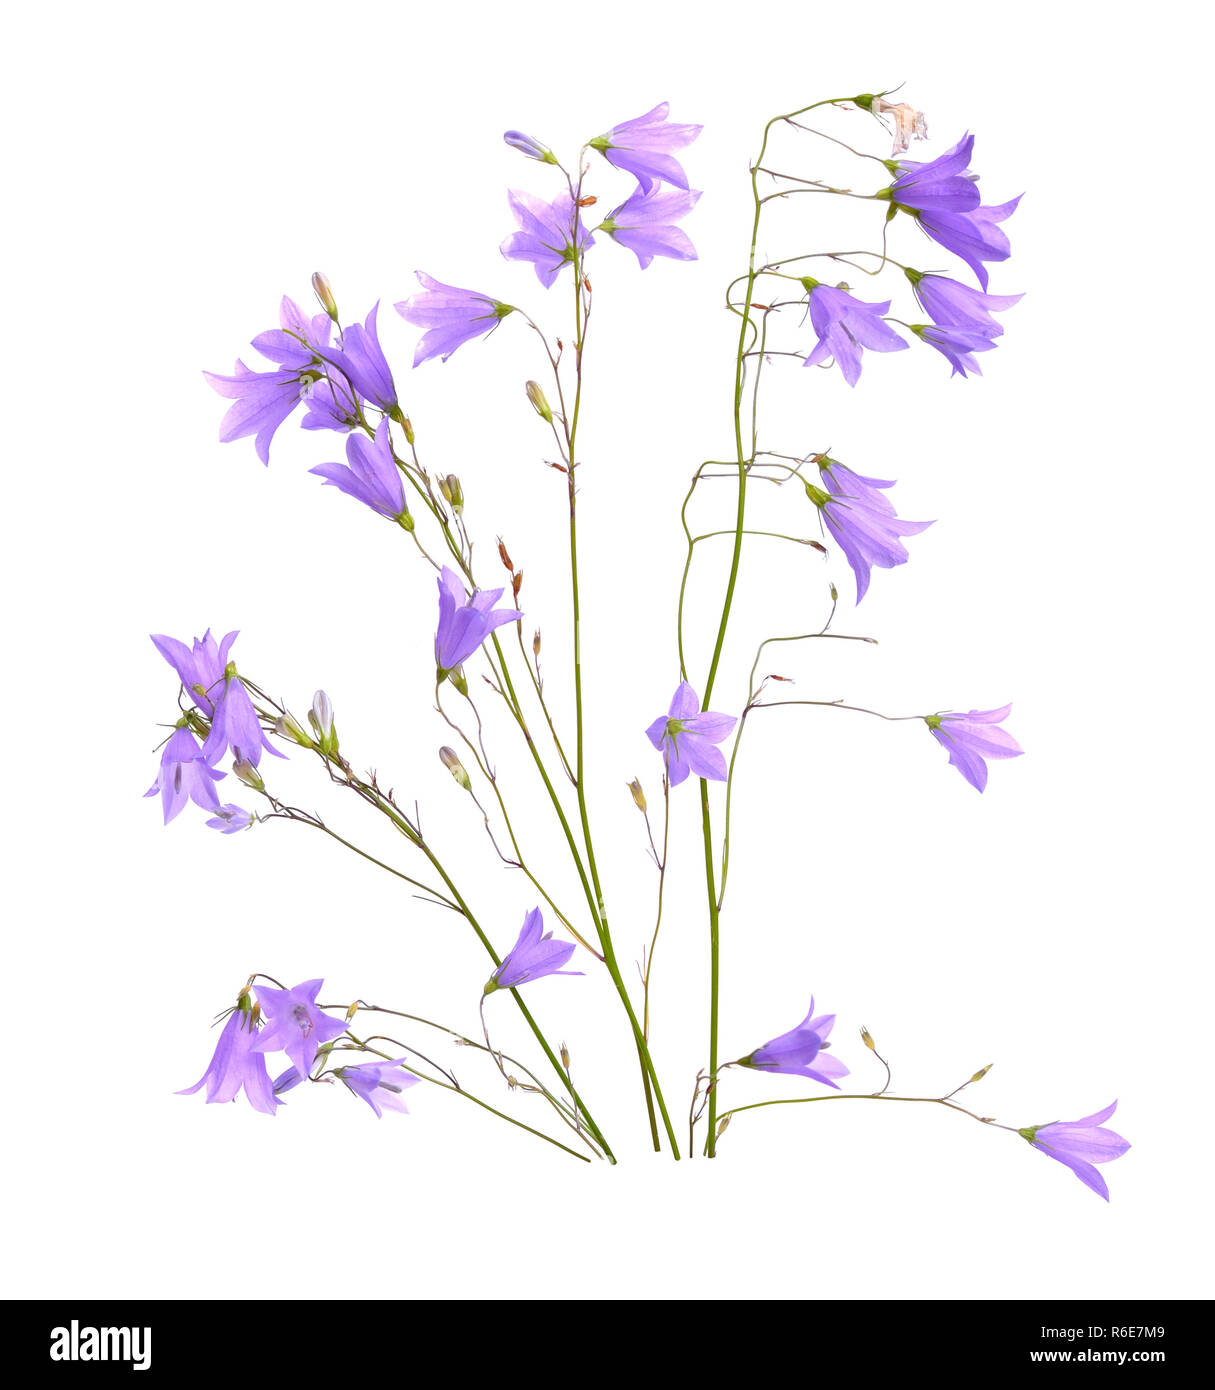 Bellflower, Campanula, fleurs en forme de cloche ou 'little bell'. Isolé sur blanc. Banque D'Images